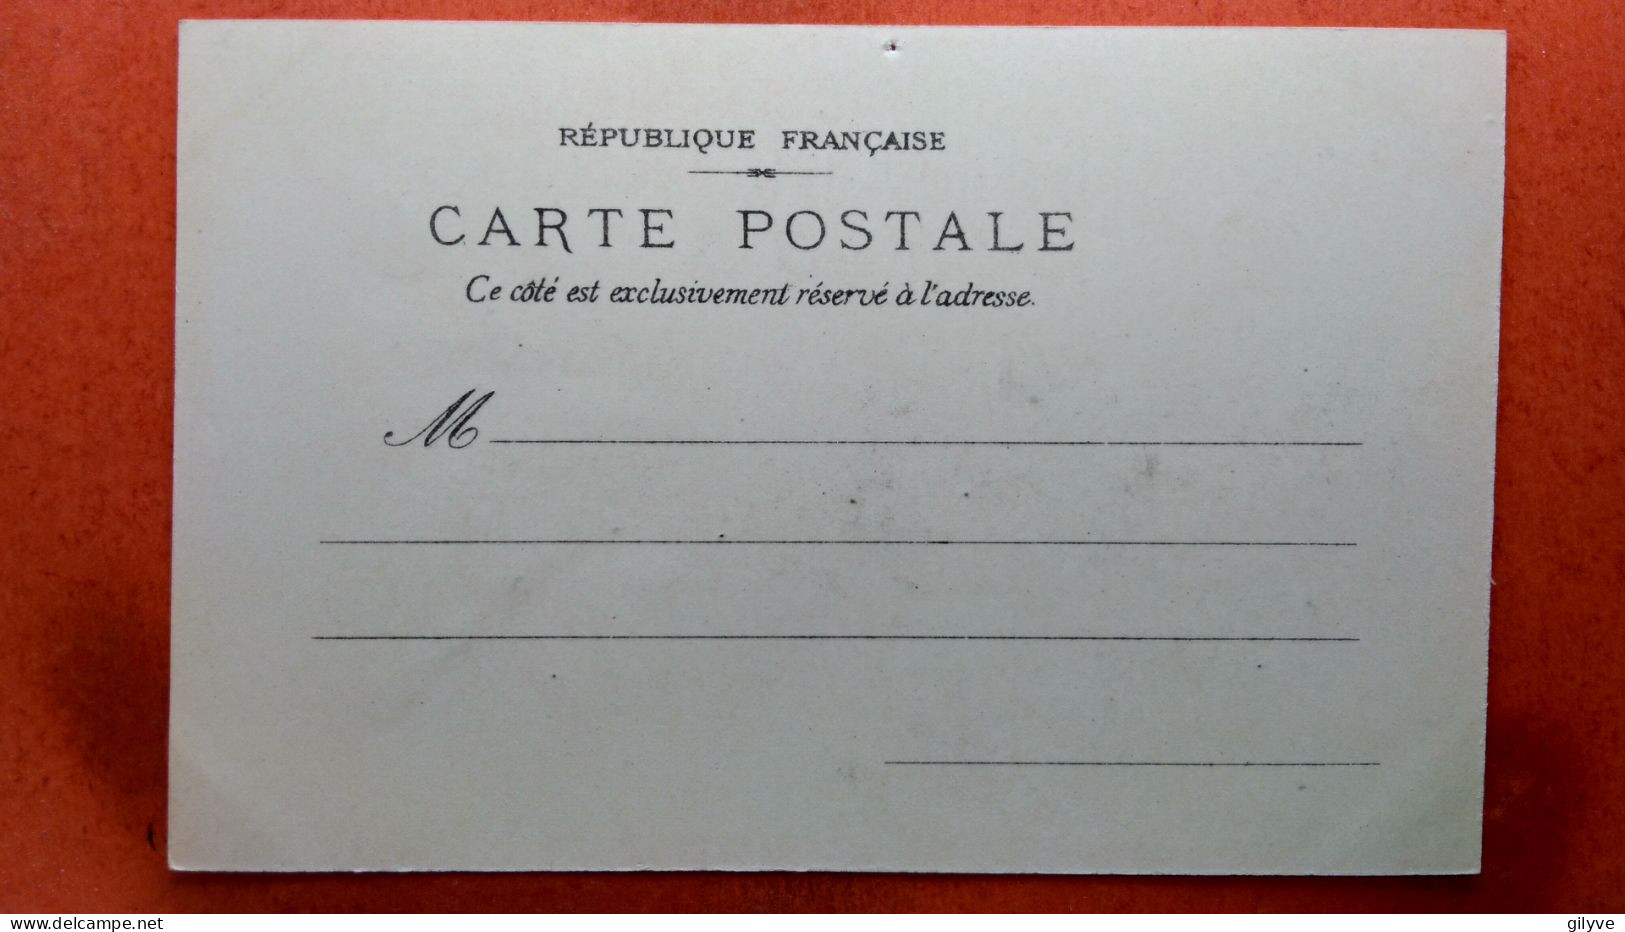 CPA (75) Exposition Universelle De Paris.1900. Pavillon Royal D'Italie. (7A.504) - Expositions